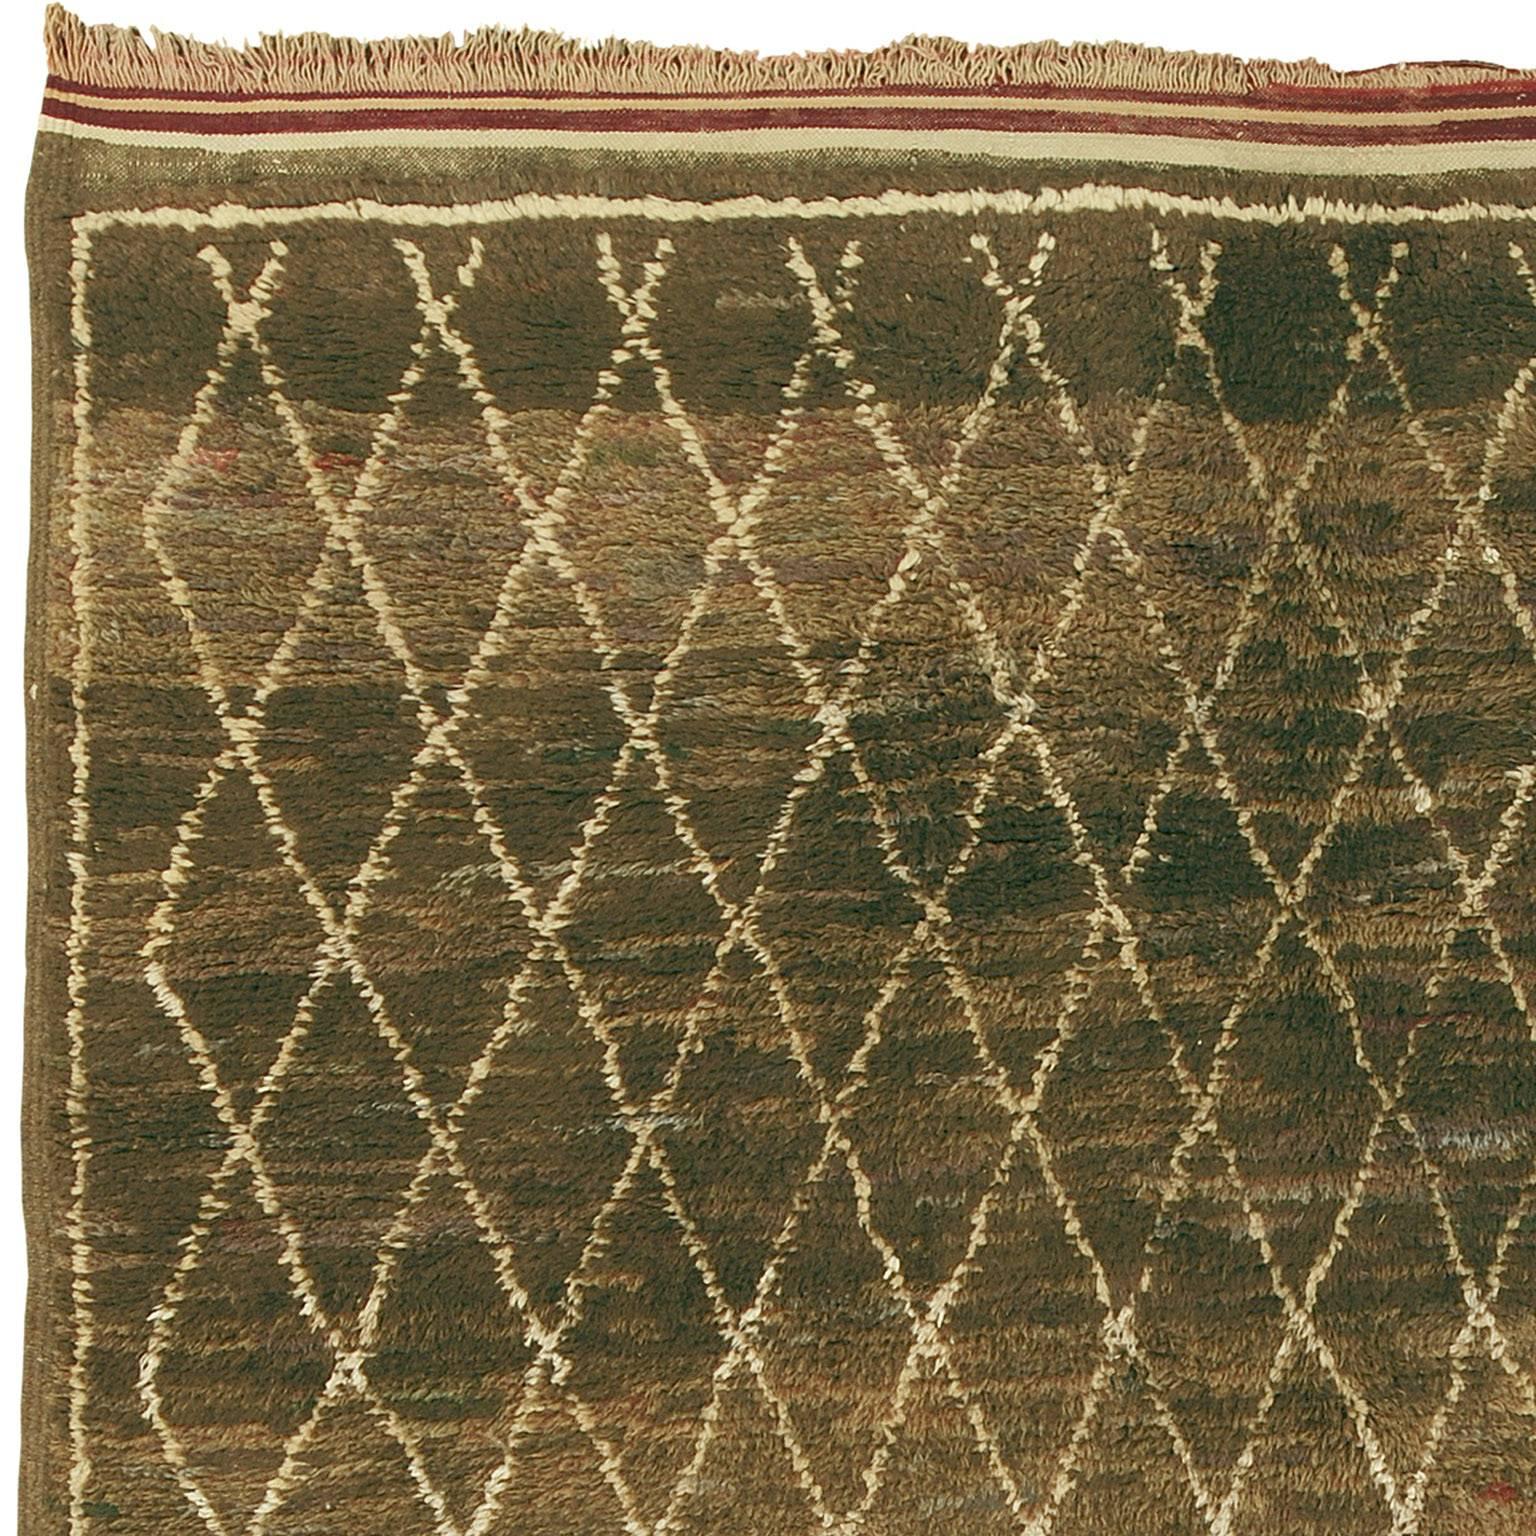 Mid-20th century Berber carpet